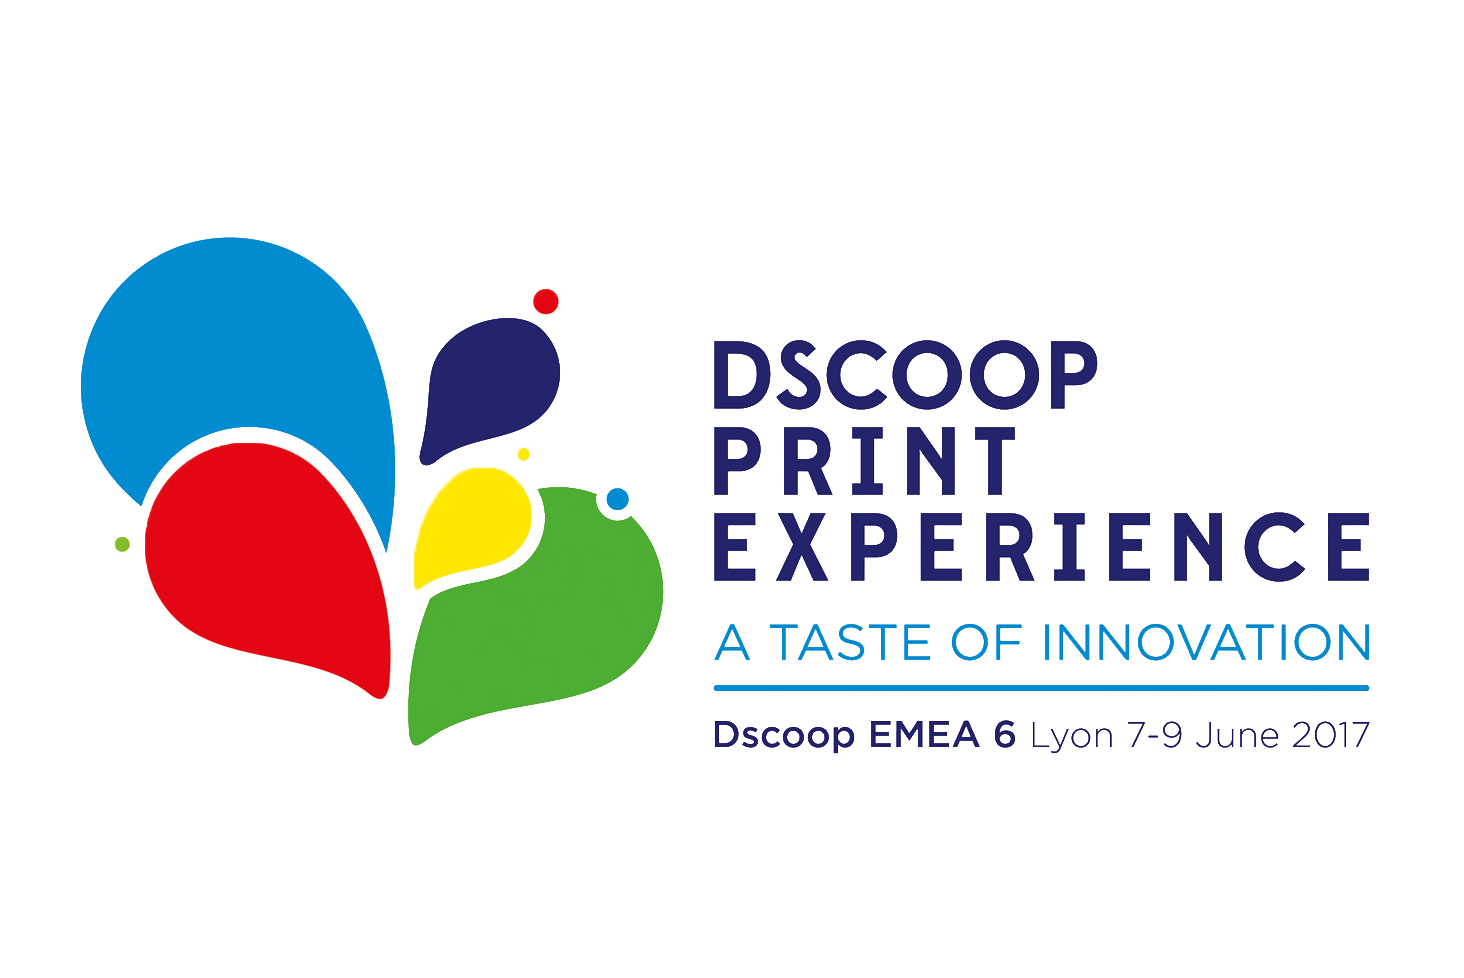 Dscoop EMEA Lyon – 7-9 June 2017